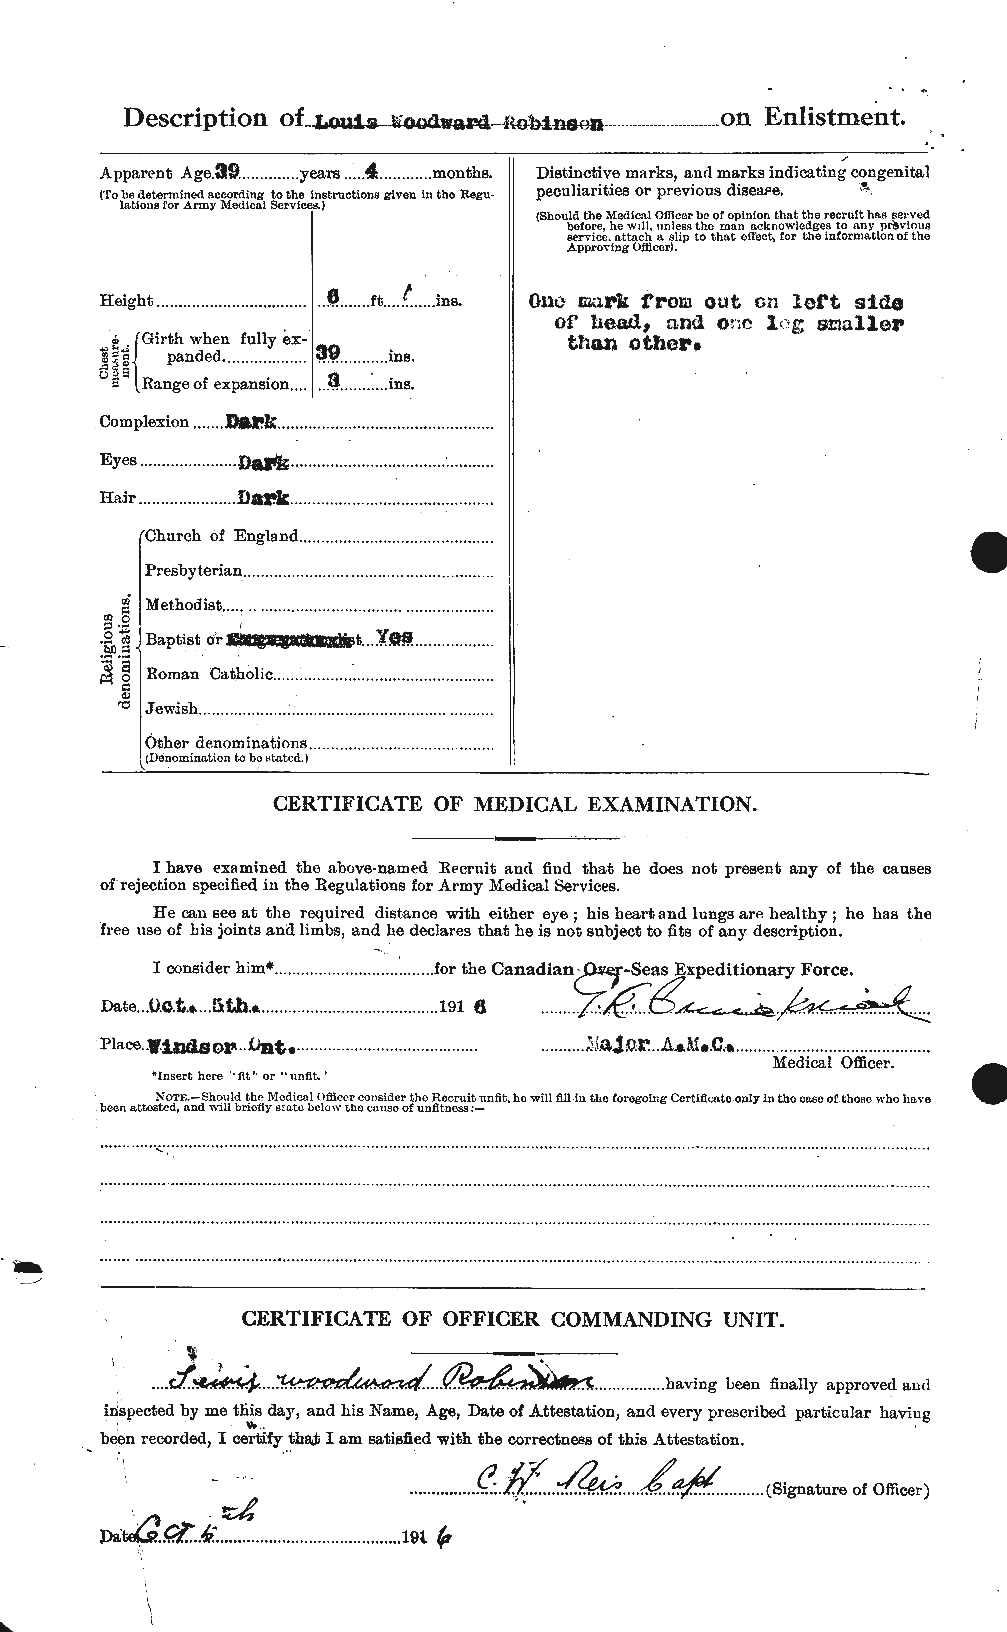 Dossiers du Personnel de la Première Guerre mondiale - CEC 611658b